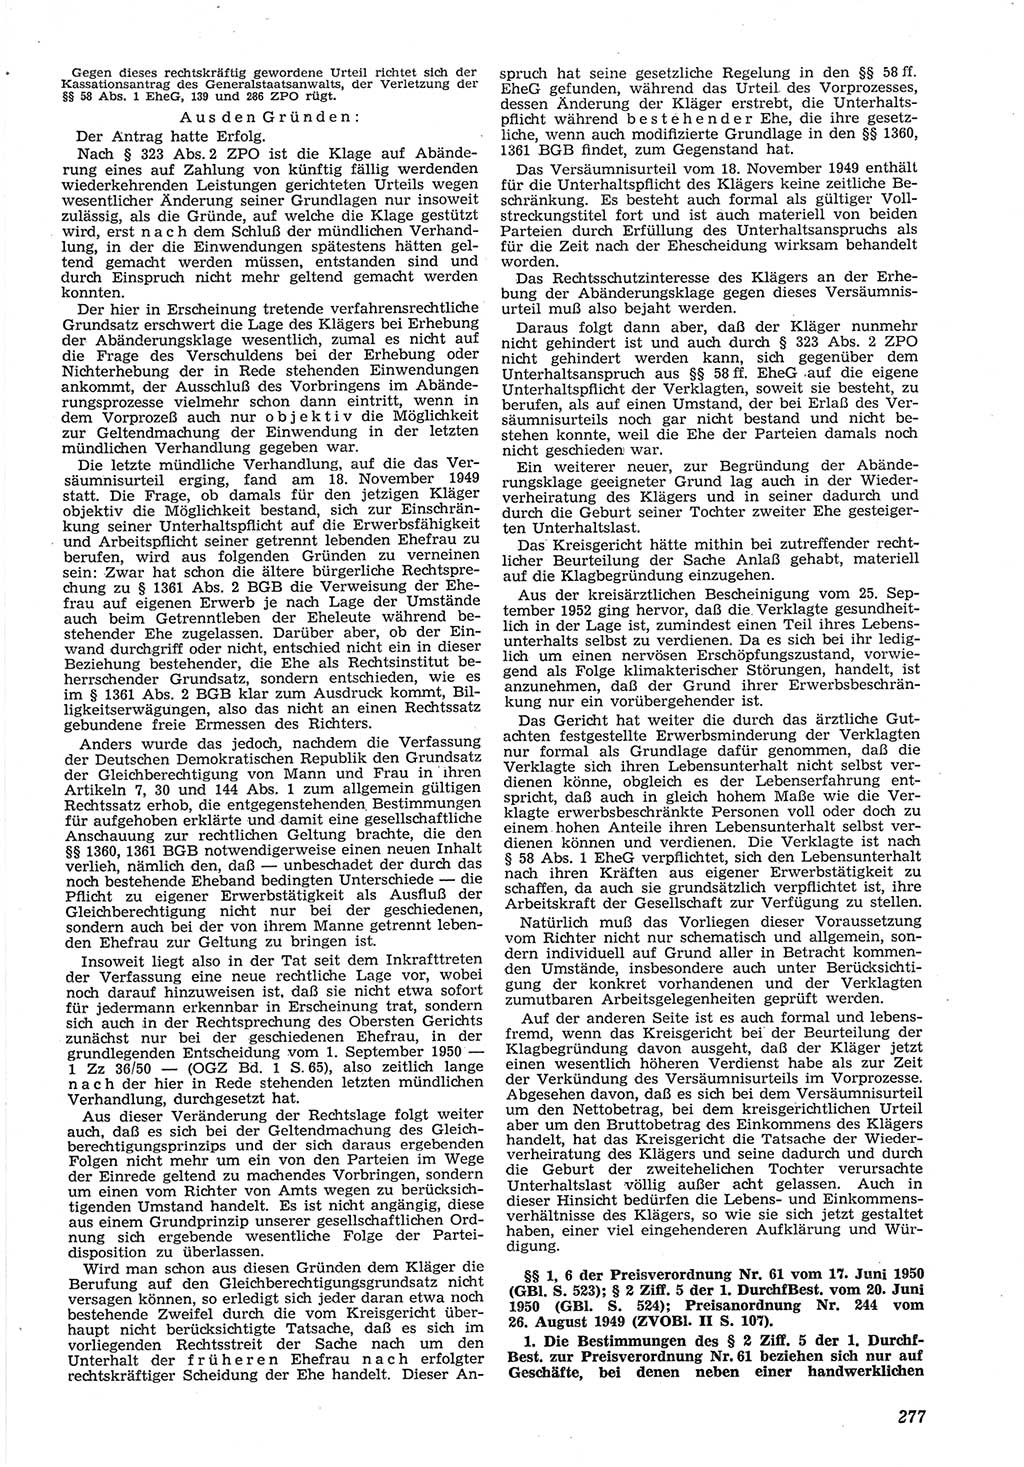 Neue Justiz (NJ), Zeitschrift für Recht und Rechtswissenschaft [Deutsche Demokratische Republik (DDR)], 8. Jahrgang 1954, Seite 277 (NJ DDR 1954, S. 277)